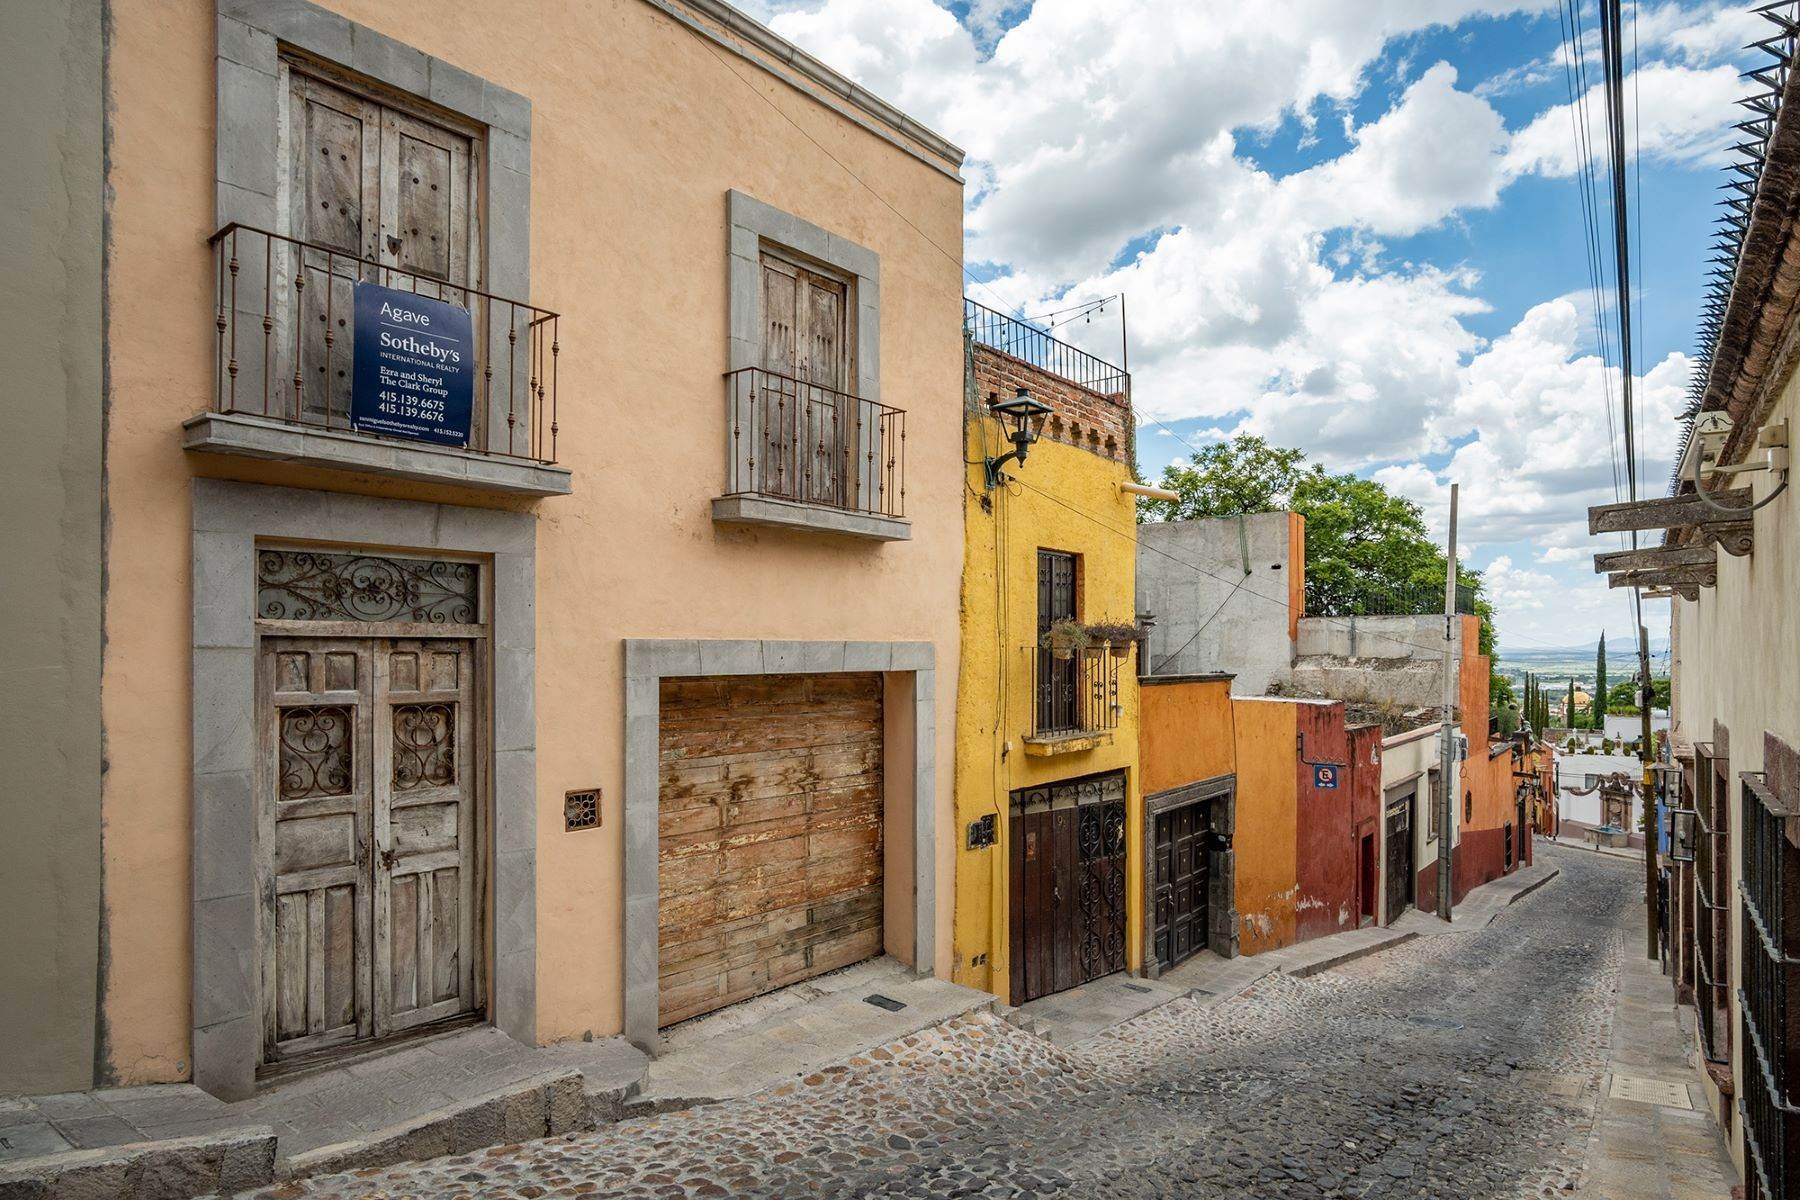 Property for Sale at Historic Centro Lot Bajada de la Garita San Miguel De Allende, Guanajuato 37700 Mexico